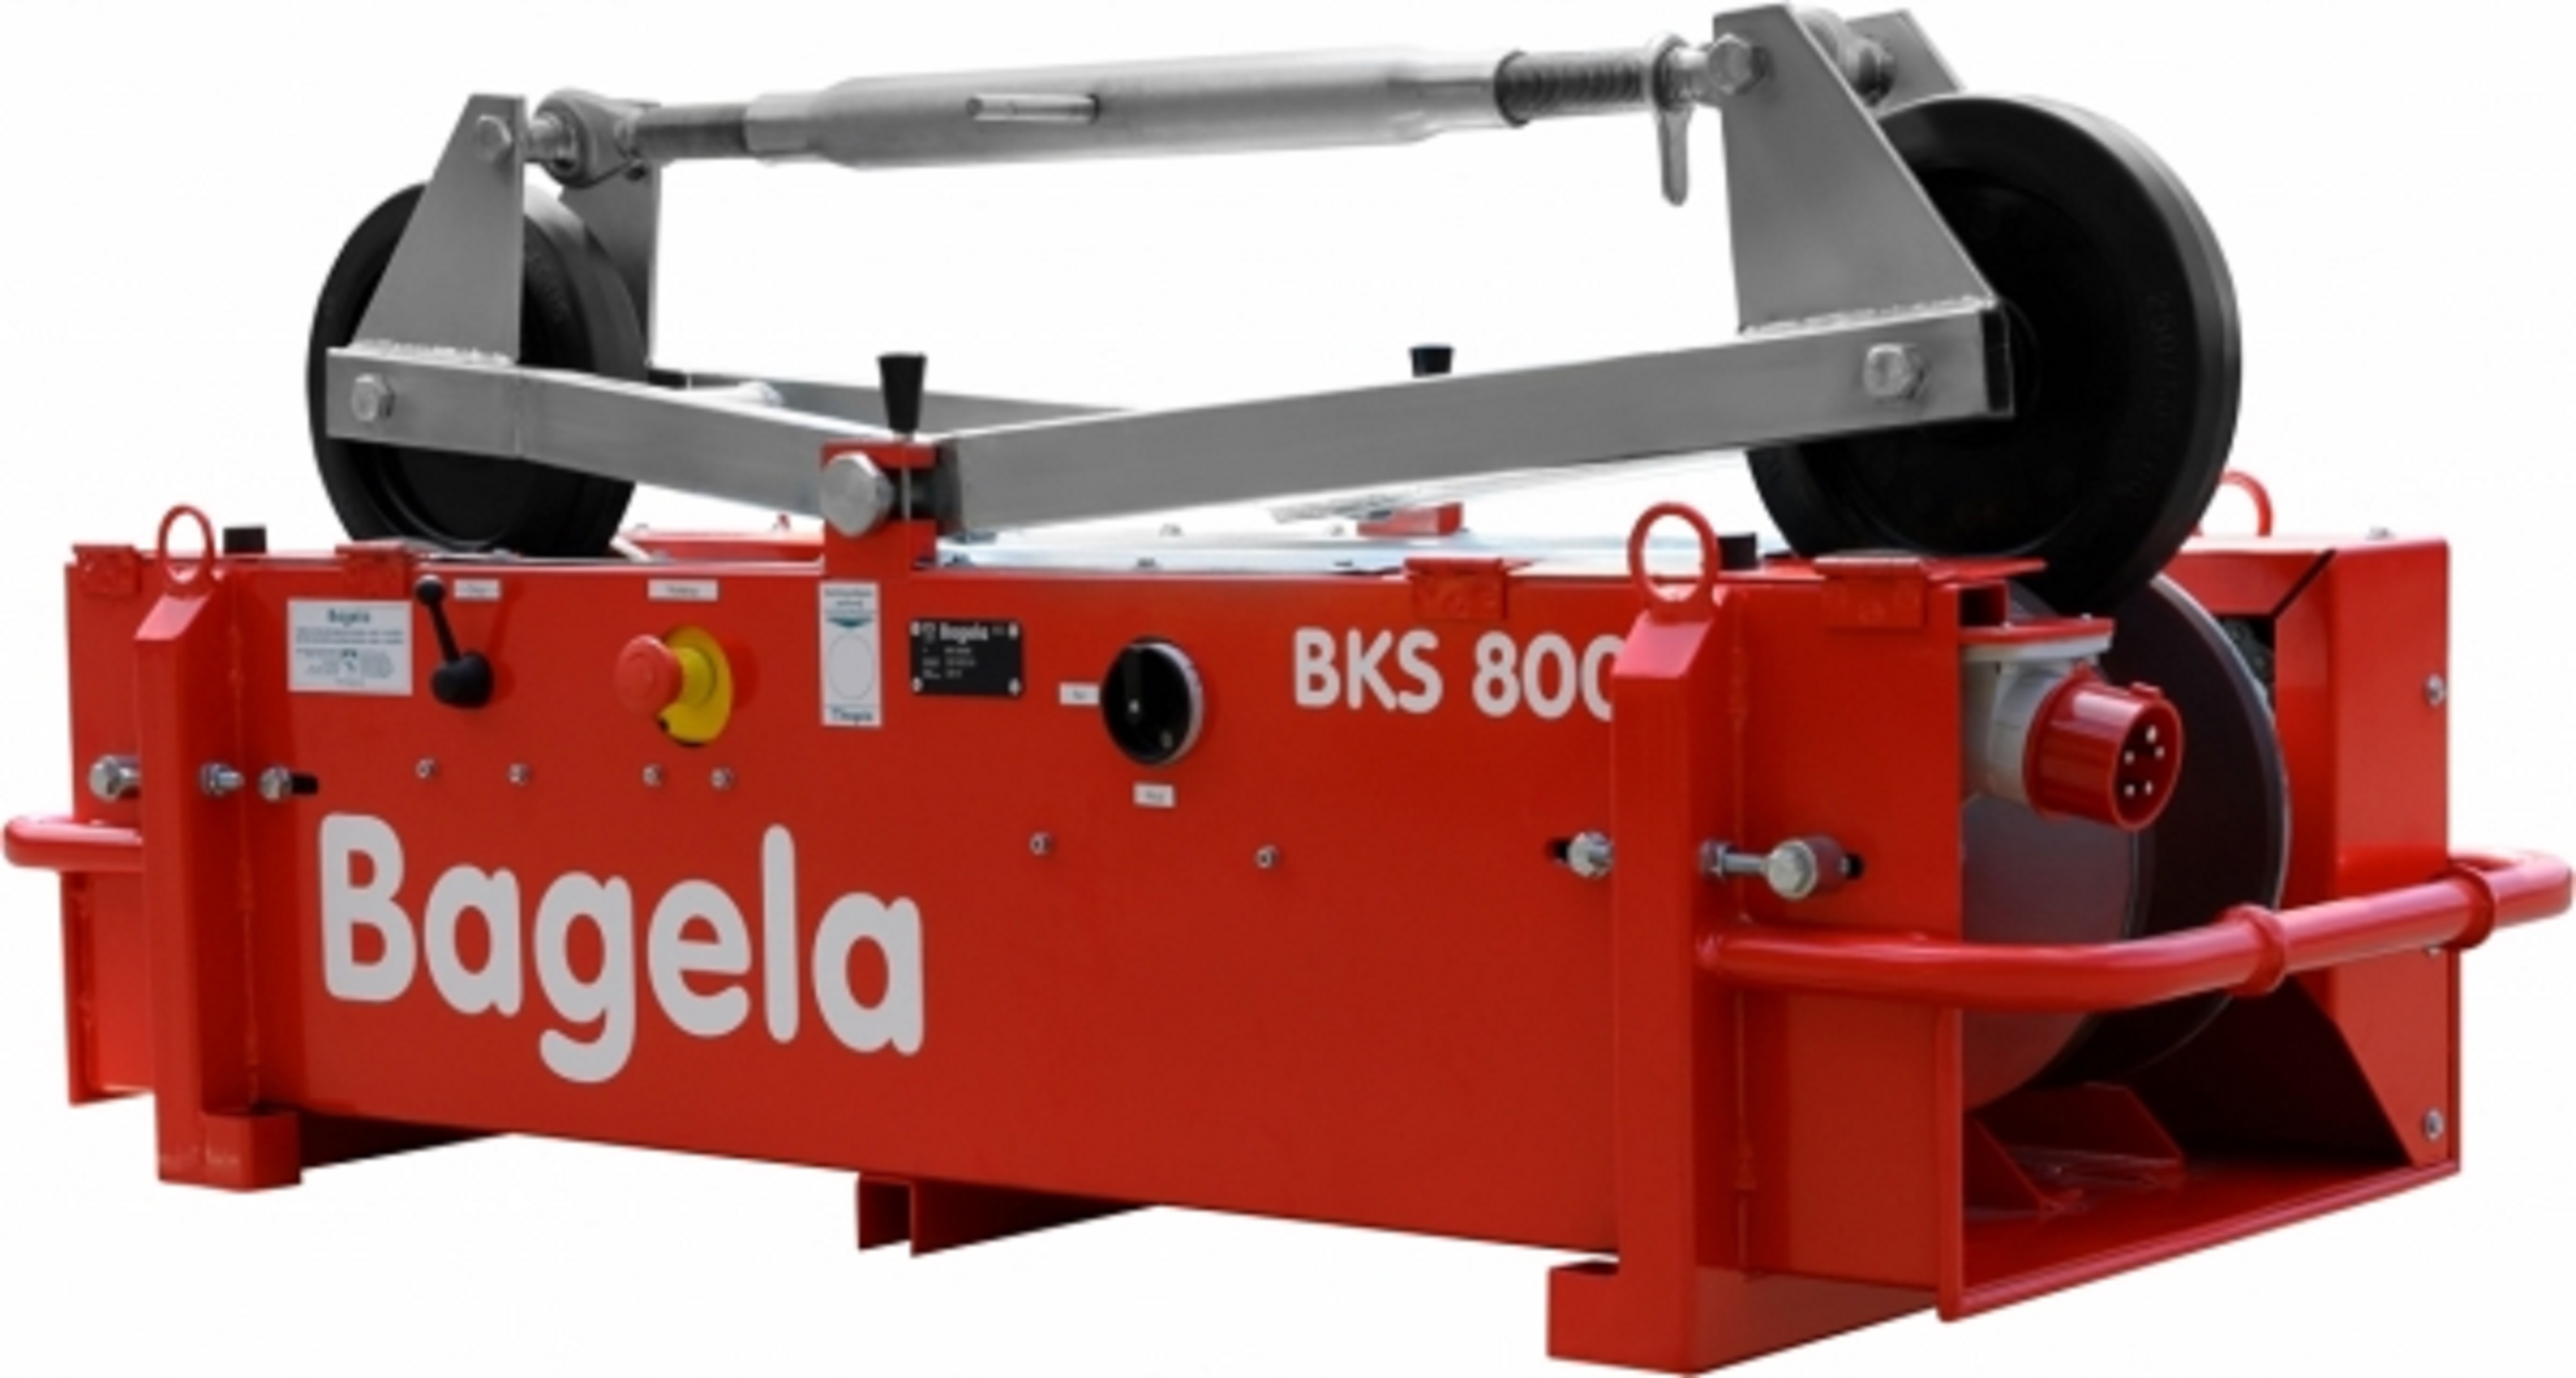 BAGELA BKS 800 hydraulische kabel in- en uitvoermachine